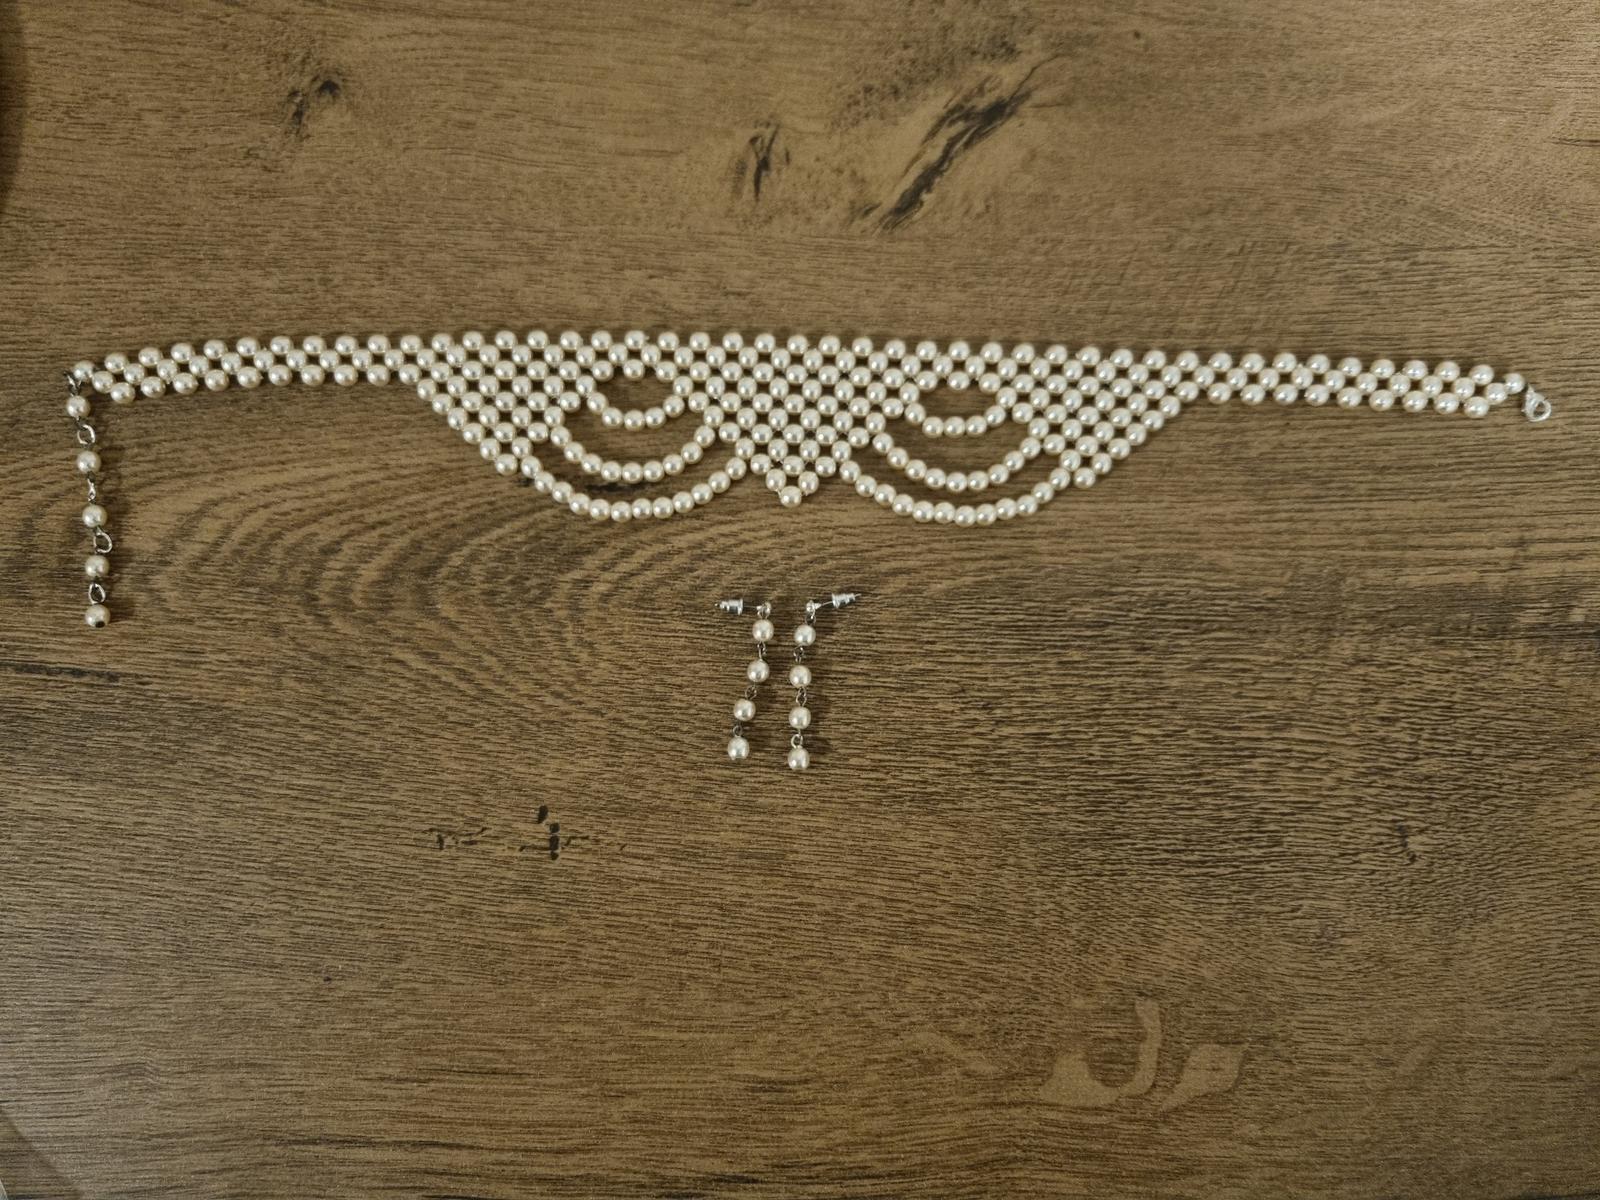 Náhrdelník , náušnice  perly Jablonecka bižutéria - Obrázok č. 1